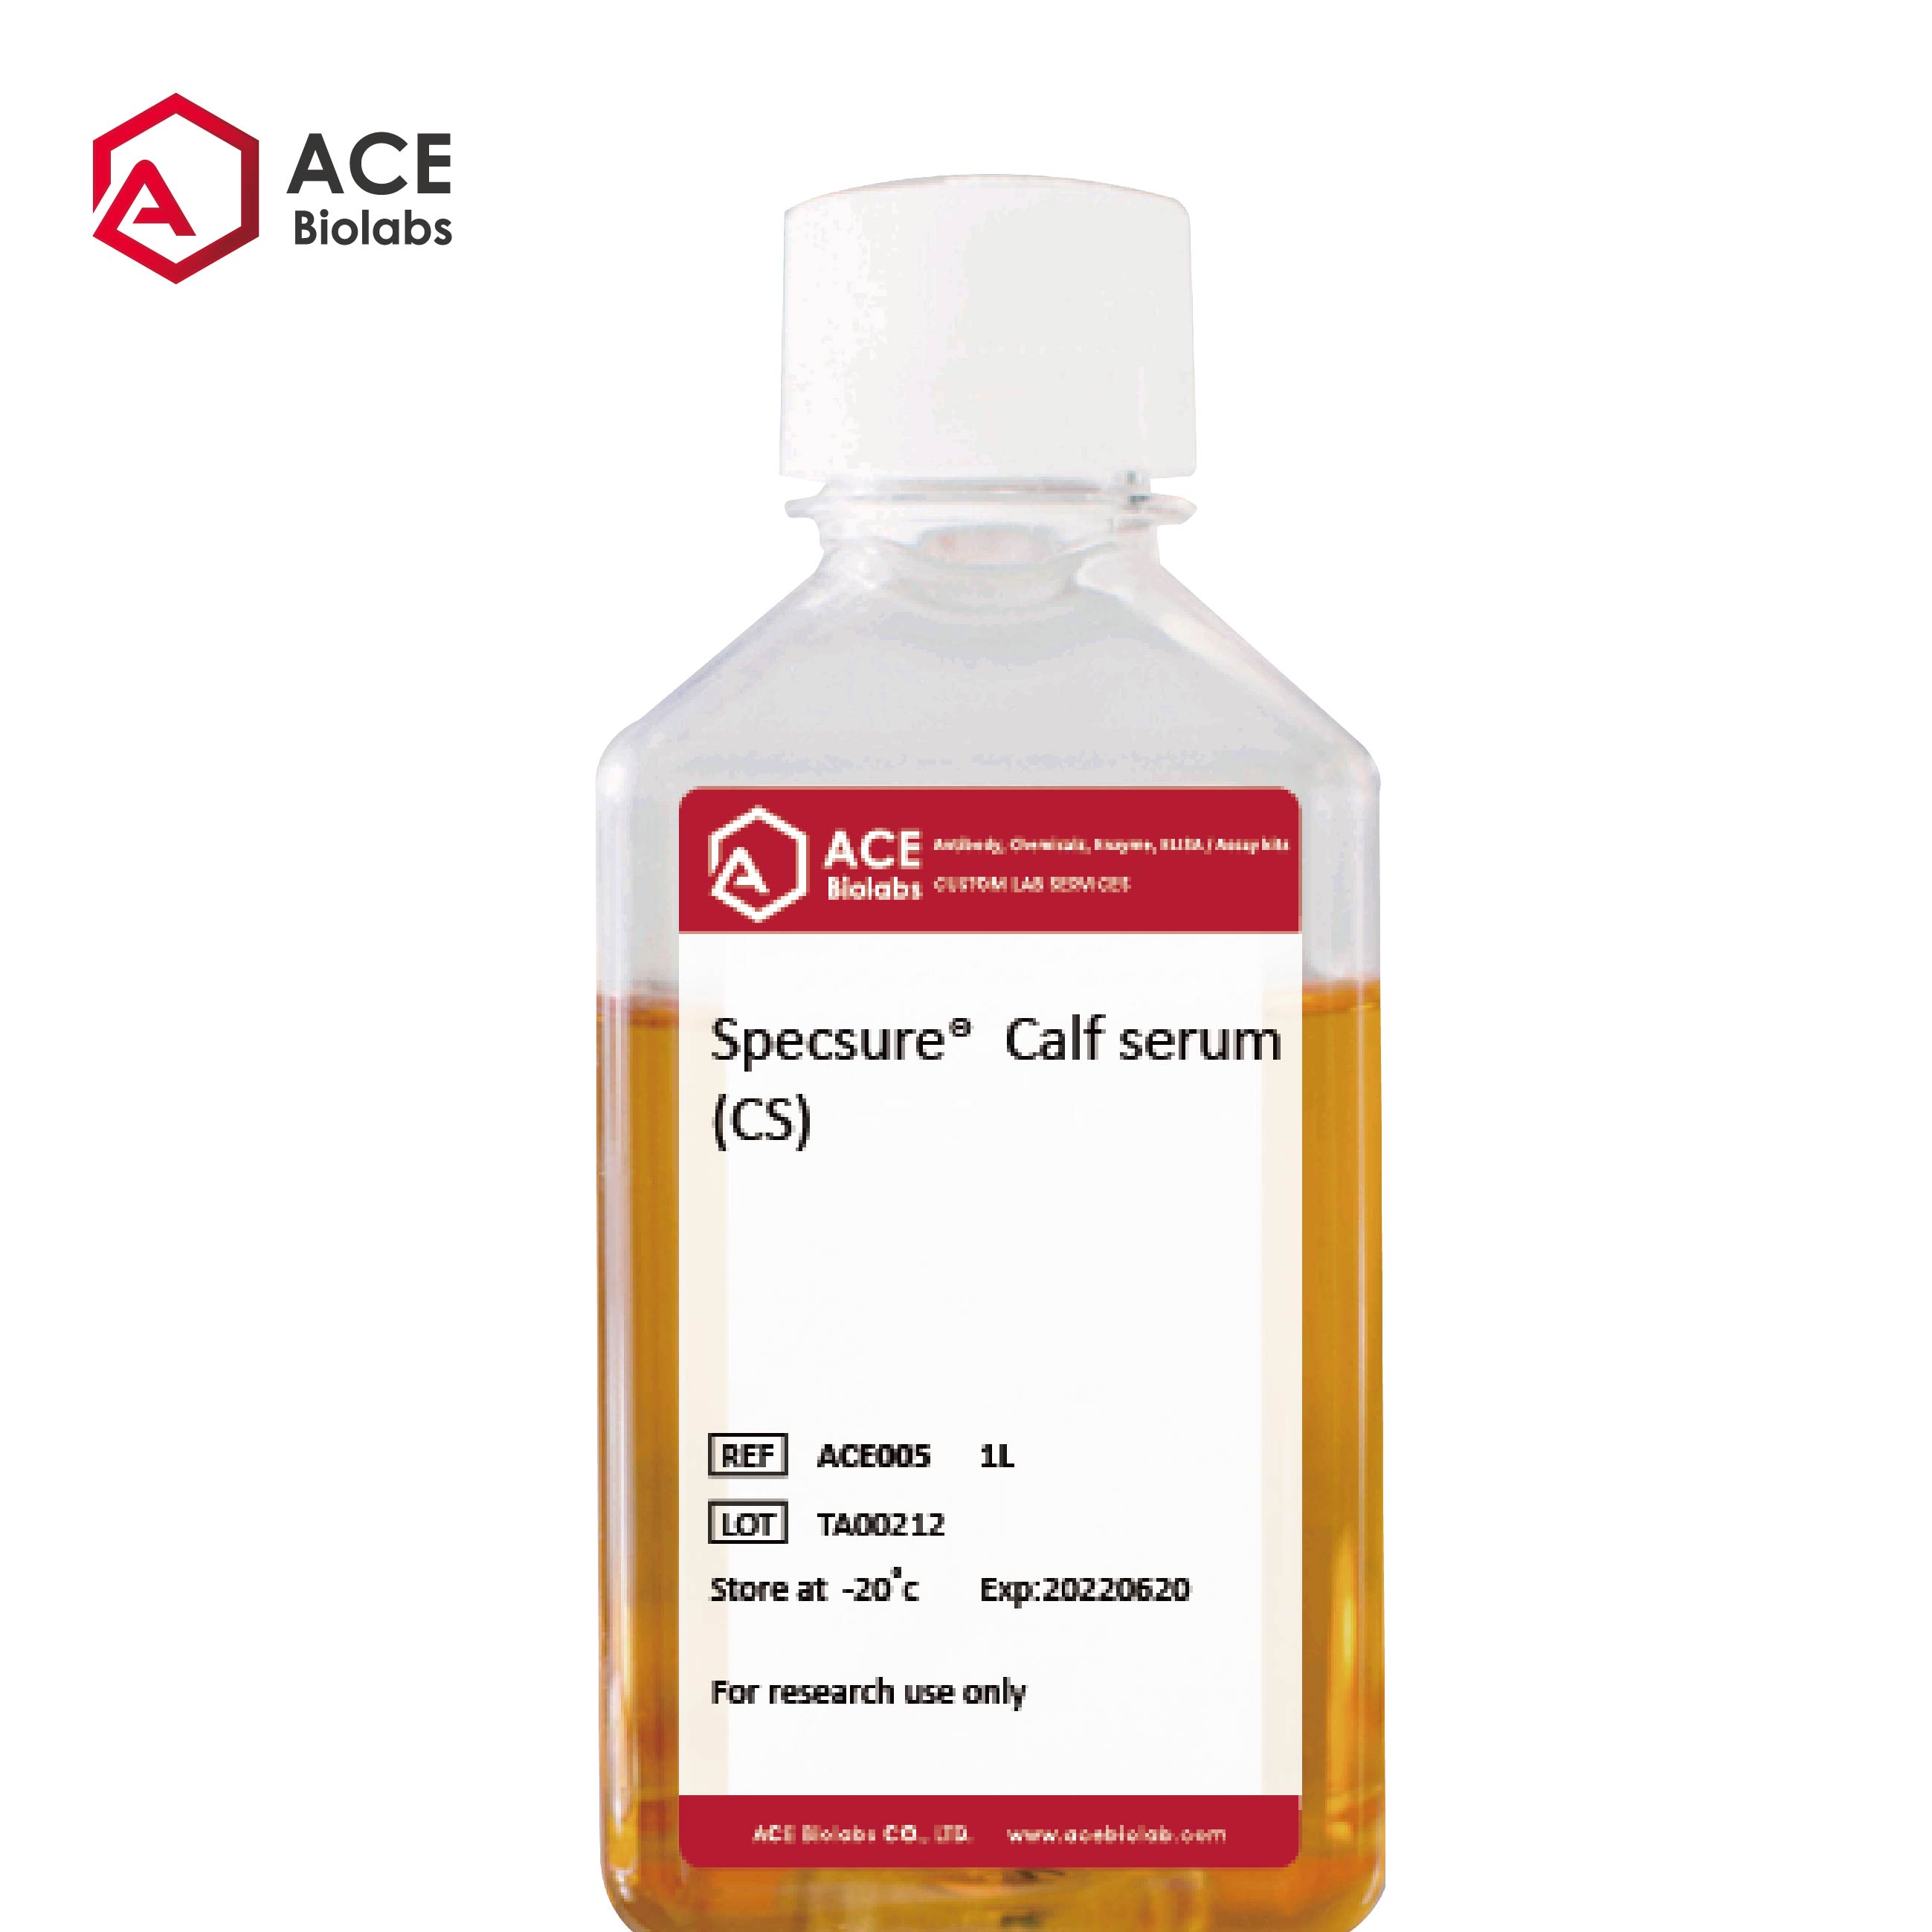 Specsure® Calf serum (CS)